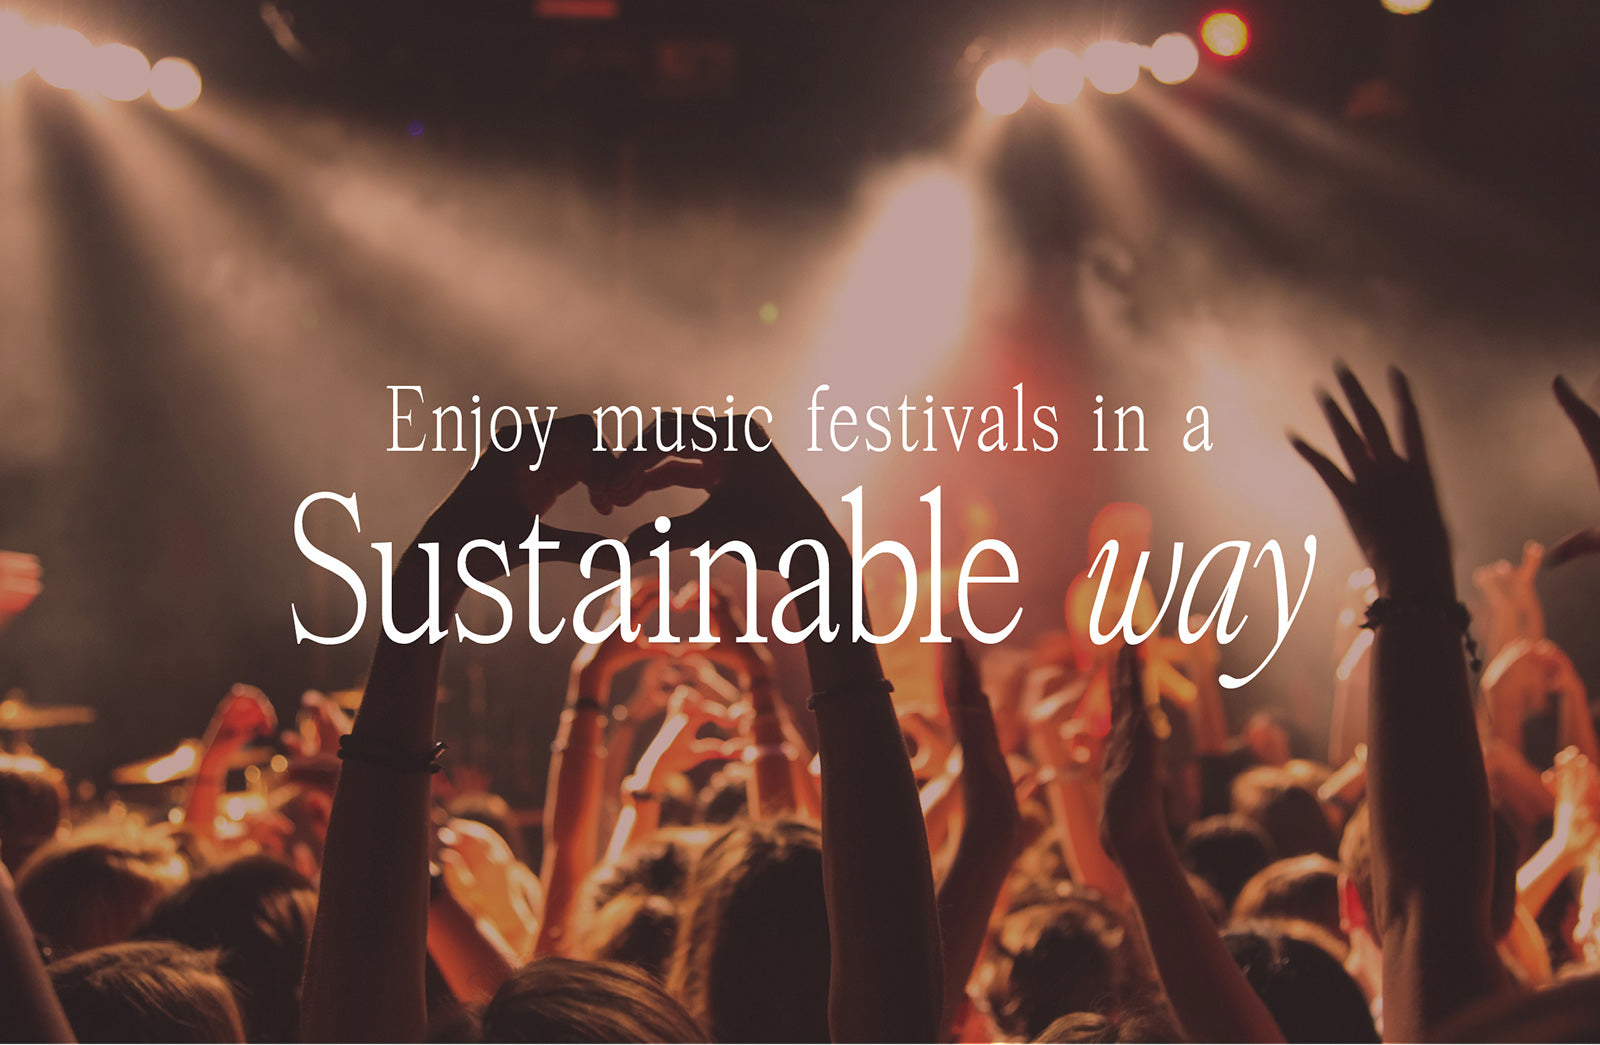 5 ways to enjoy music festivals sustainably